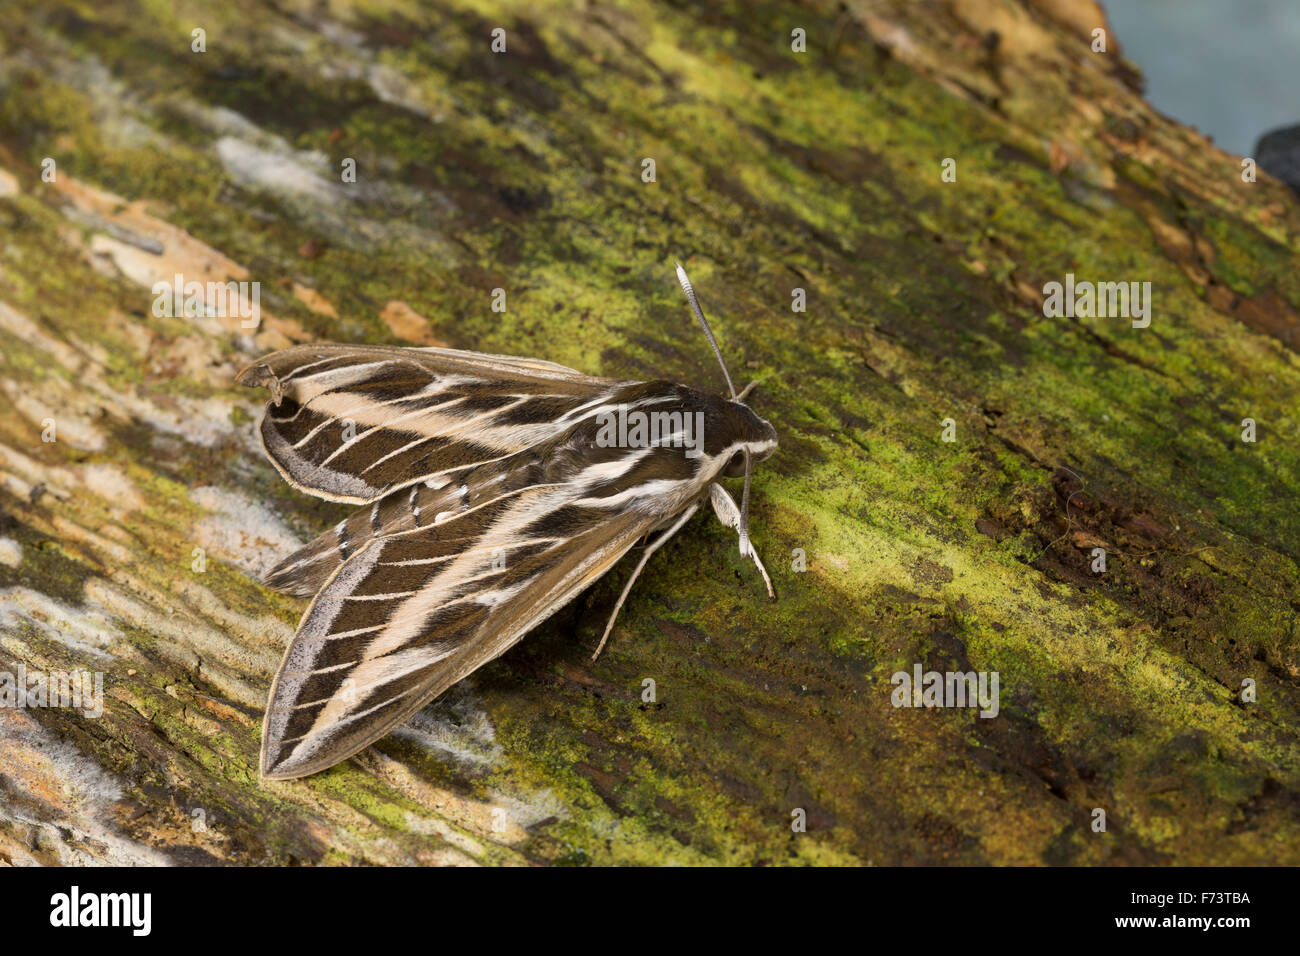 Striped hawk-moth, hawkmoth, Linienschwärmer, Linien-Schwärmer, Hyles livornica, Celerio lineata, Le Sphinx livournien Foto Stock